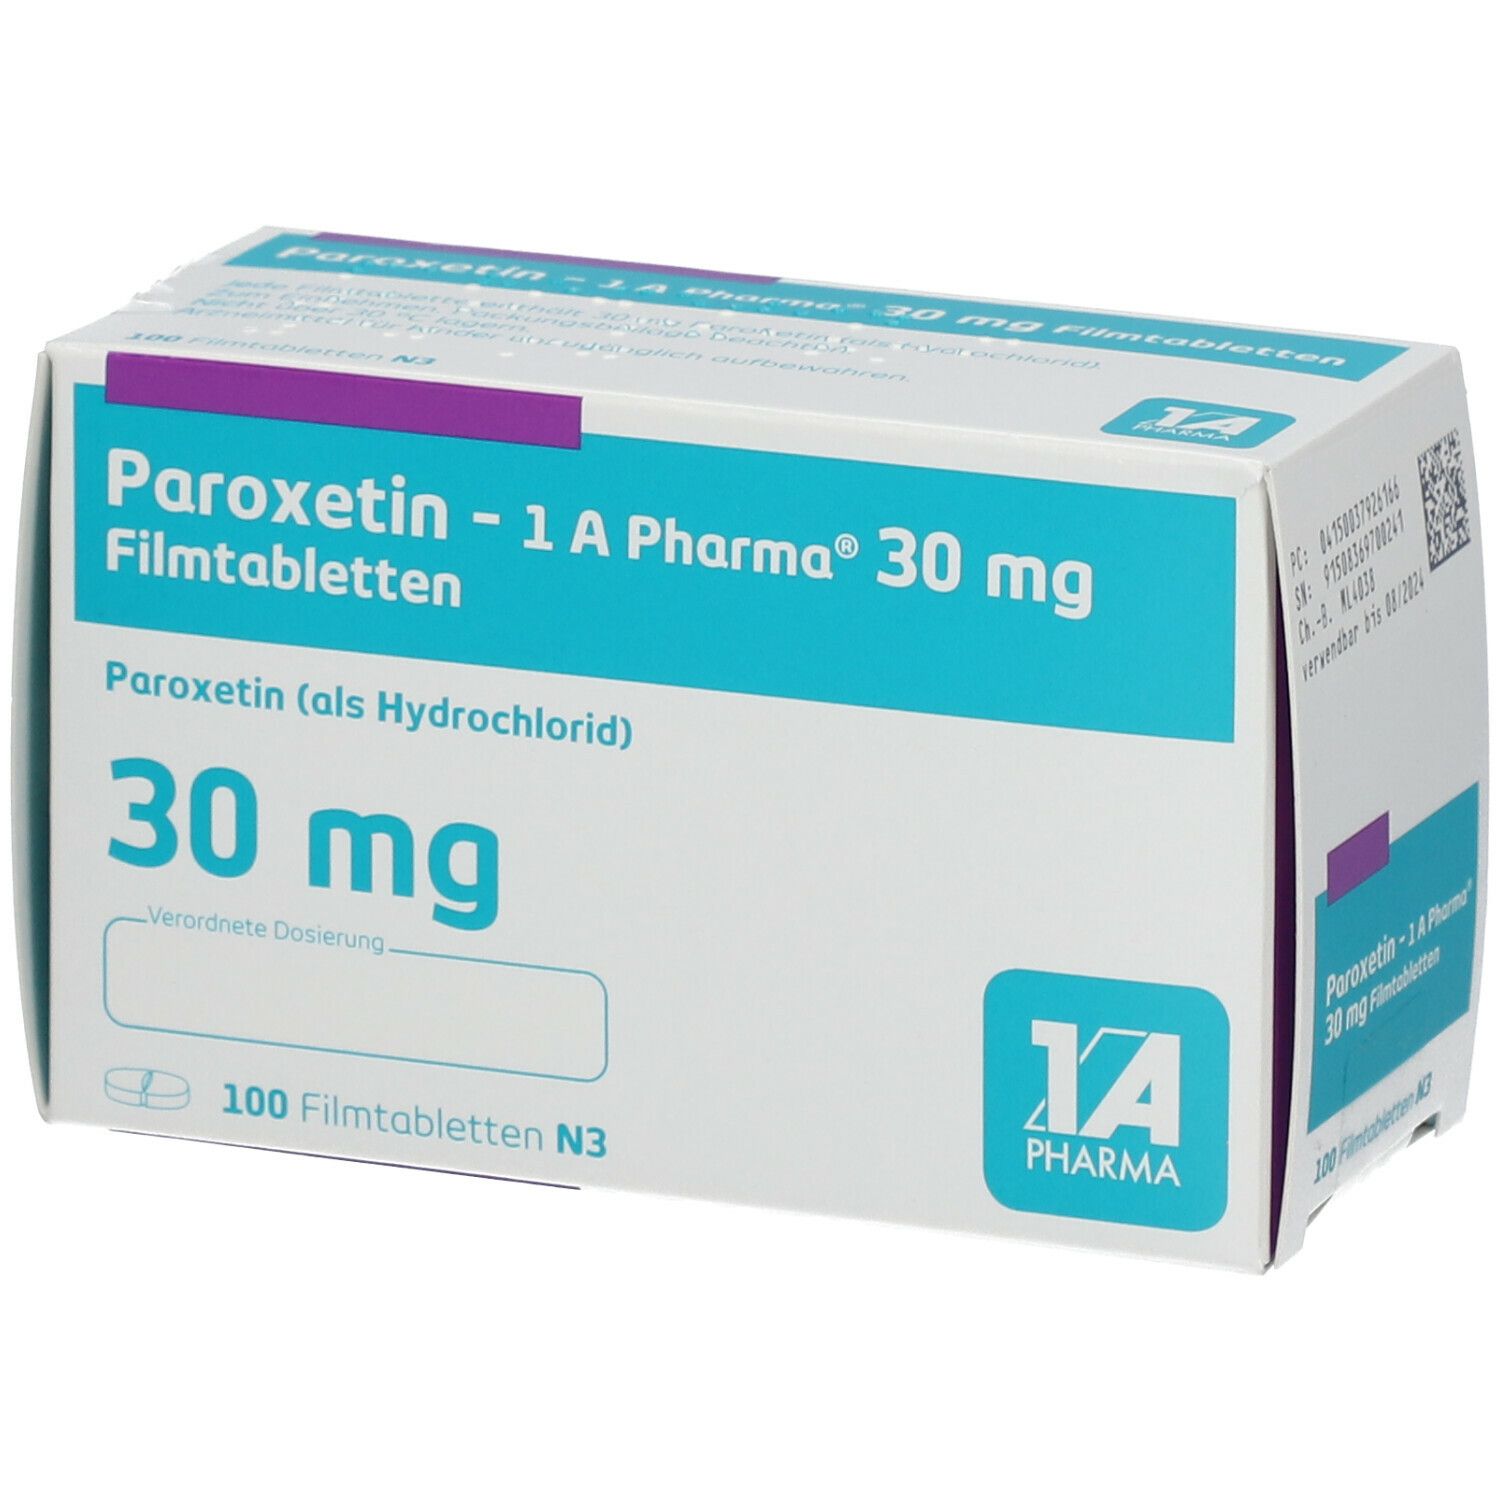 Paroxetin 1A Pharma® 30Mg